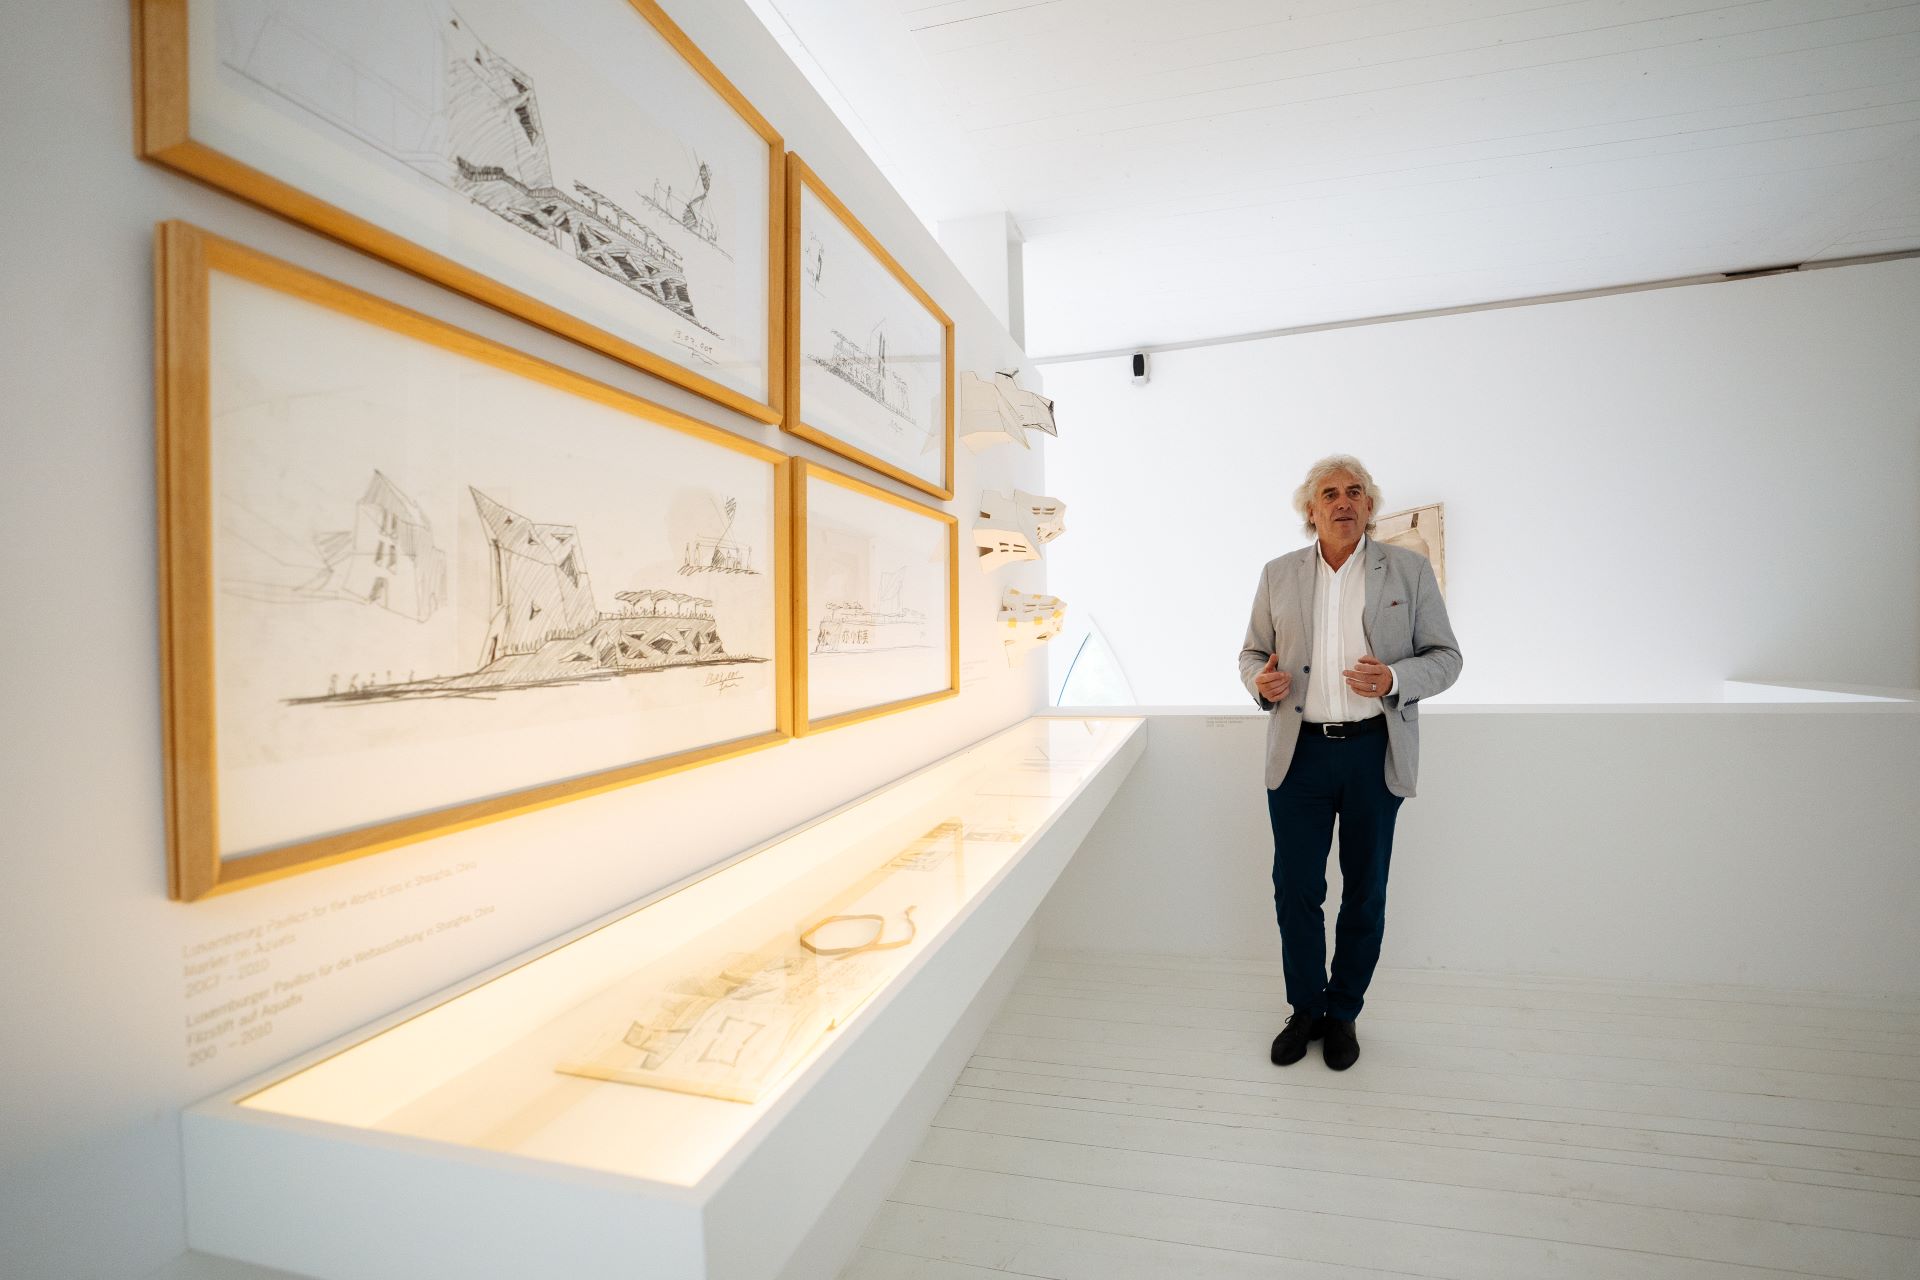 Valentiny geht vor einer architektonischen Kunstausstellung in einem komplett weißen Raum in einem Museum. Er trägt eine graue Anzugsjacke, ein weißes Hemd und eine dunkle Hose.